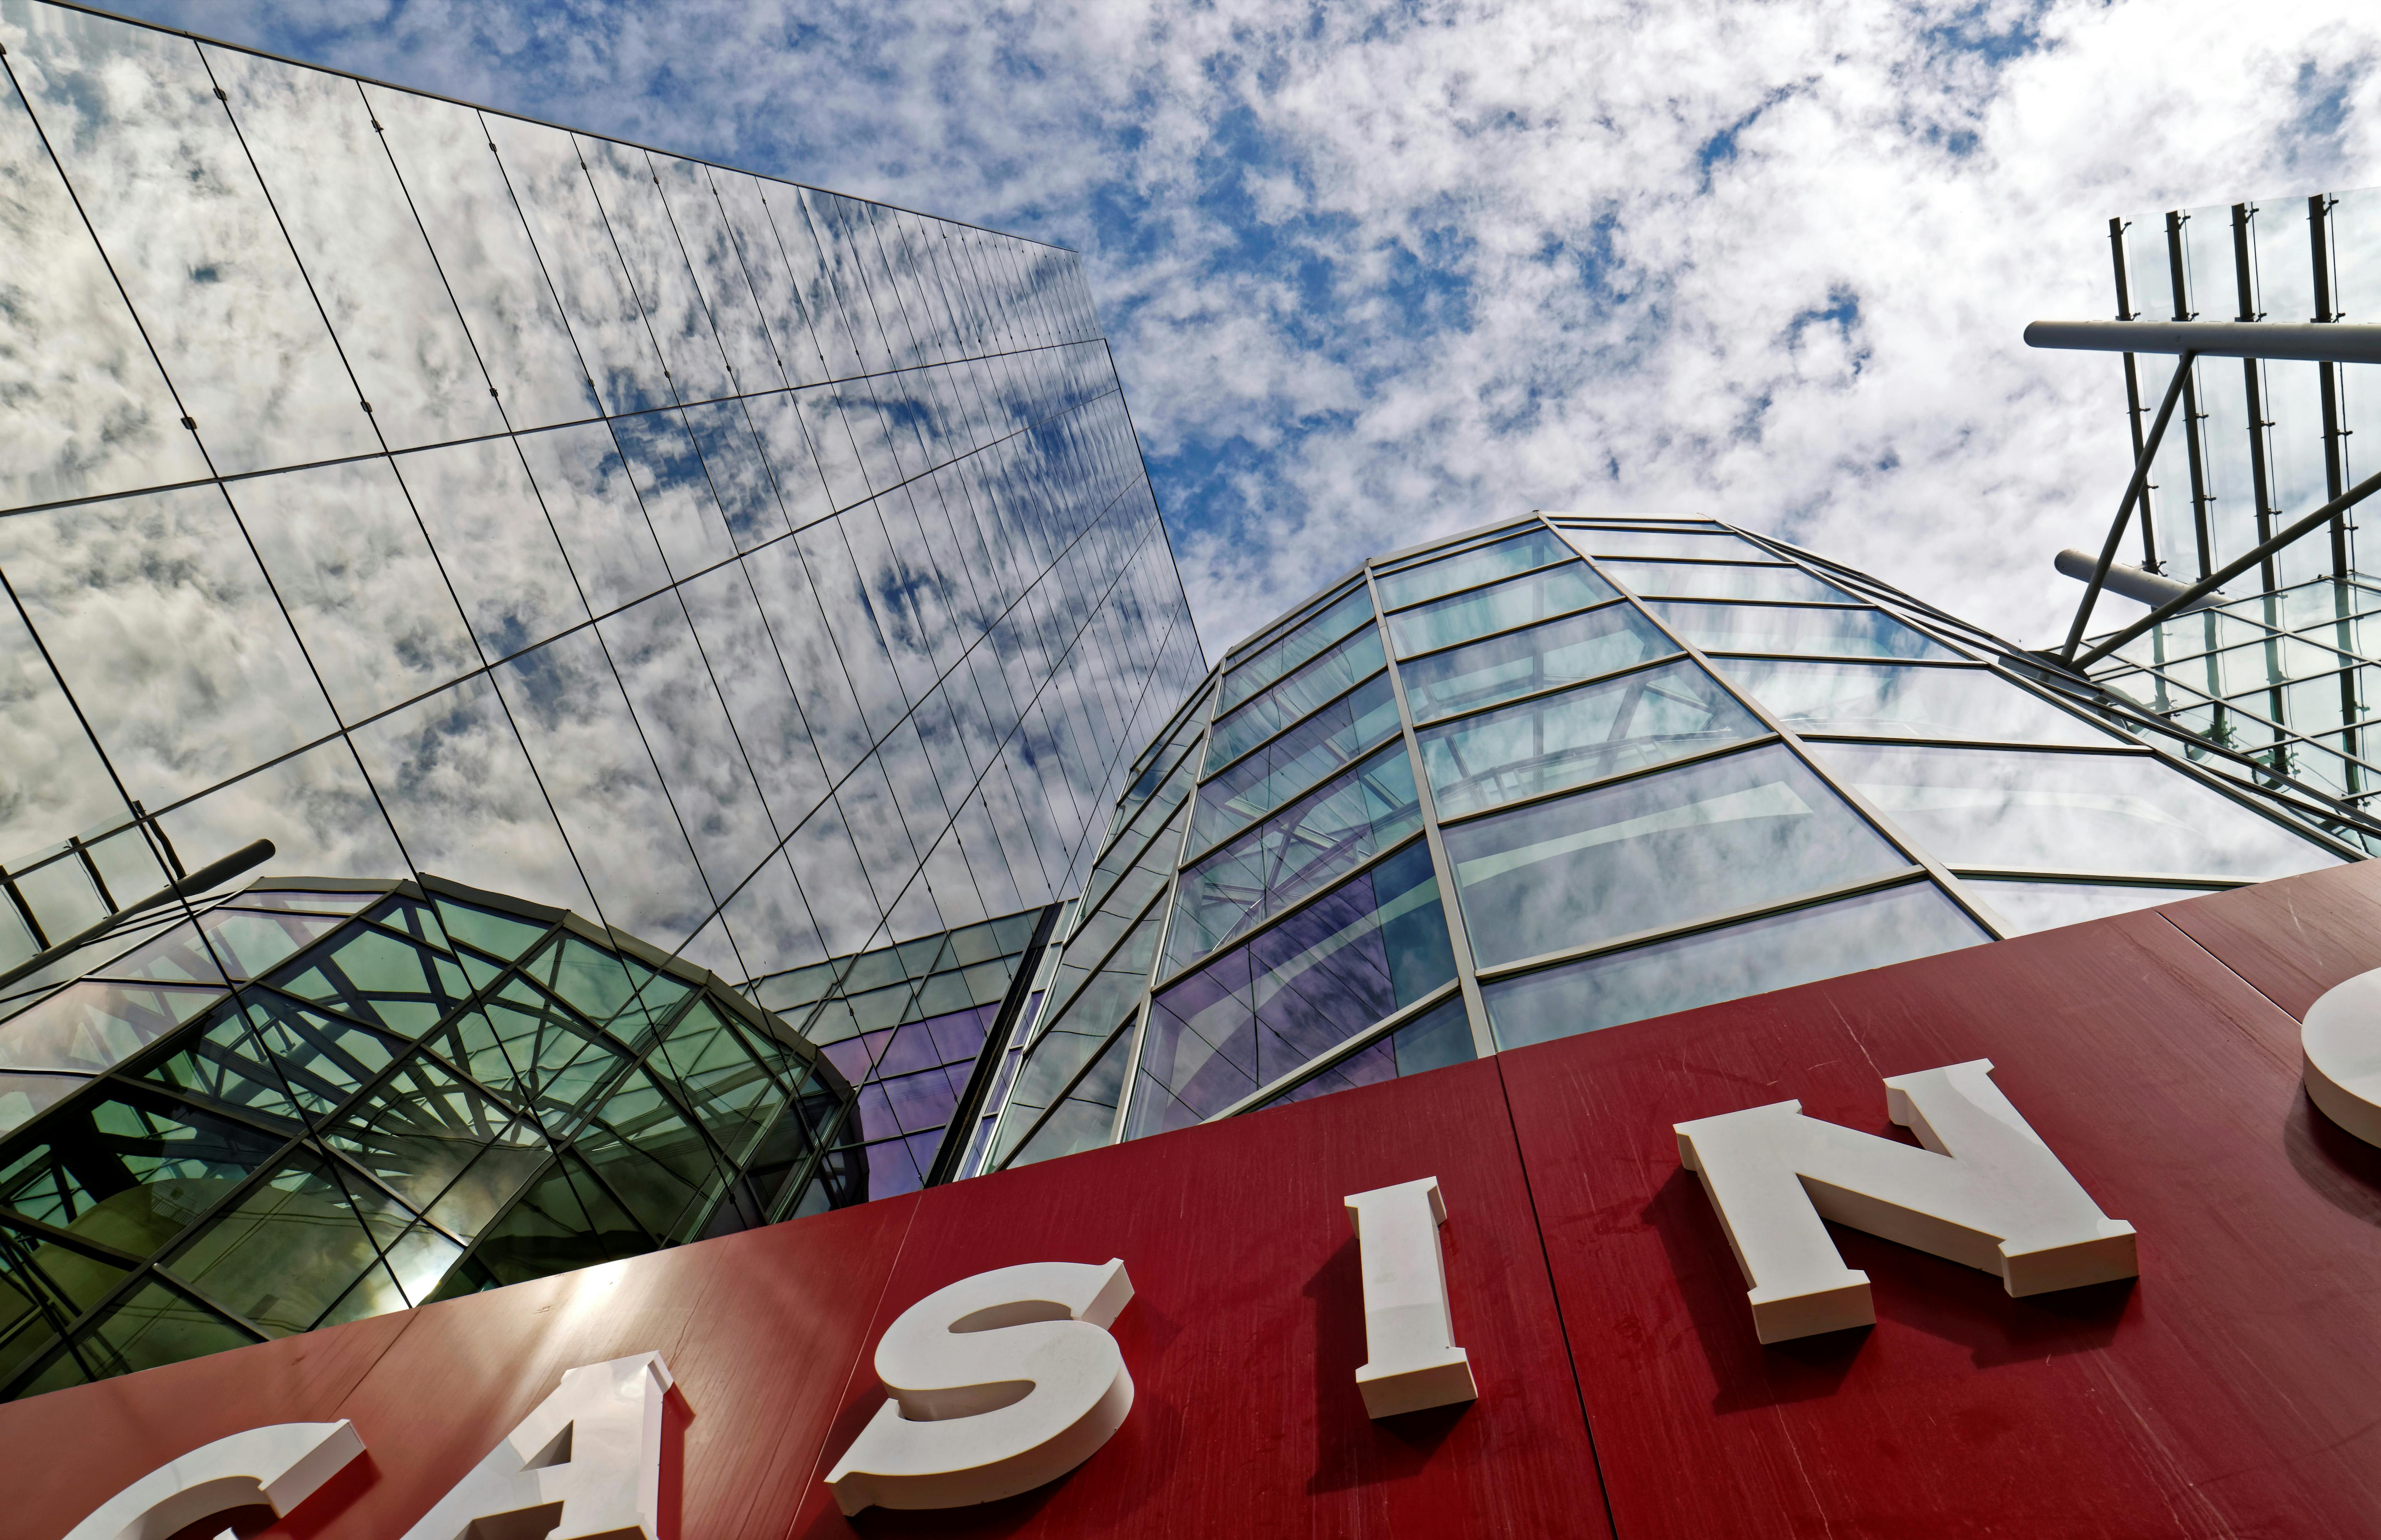 Casino Building